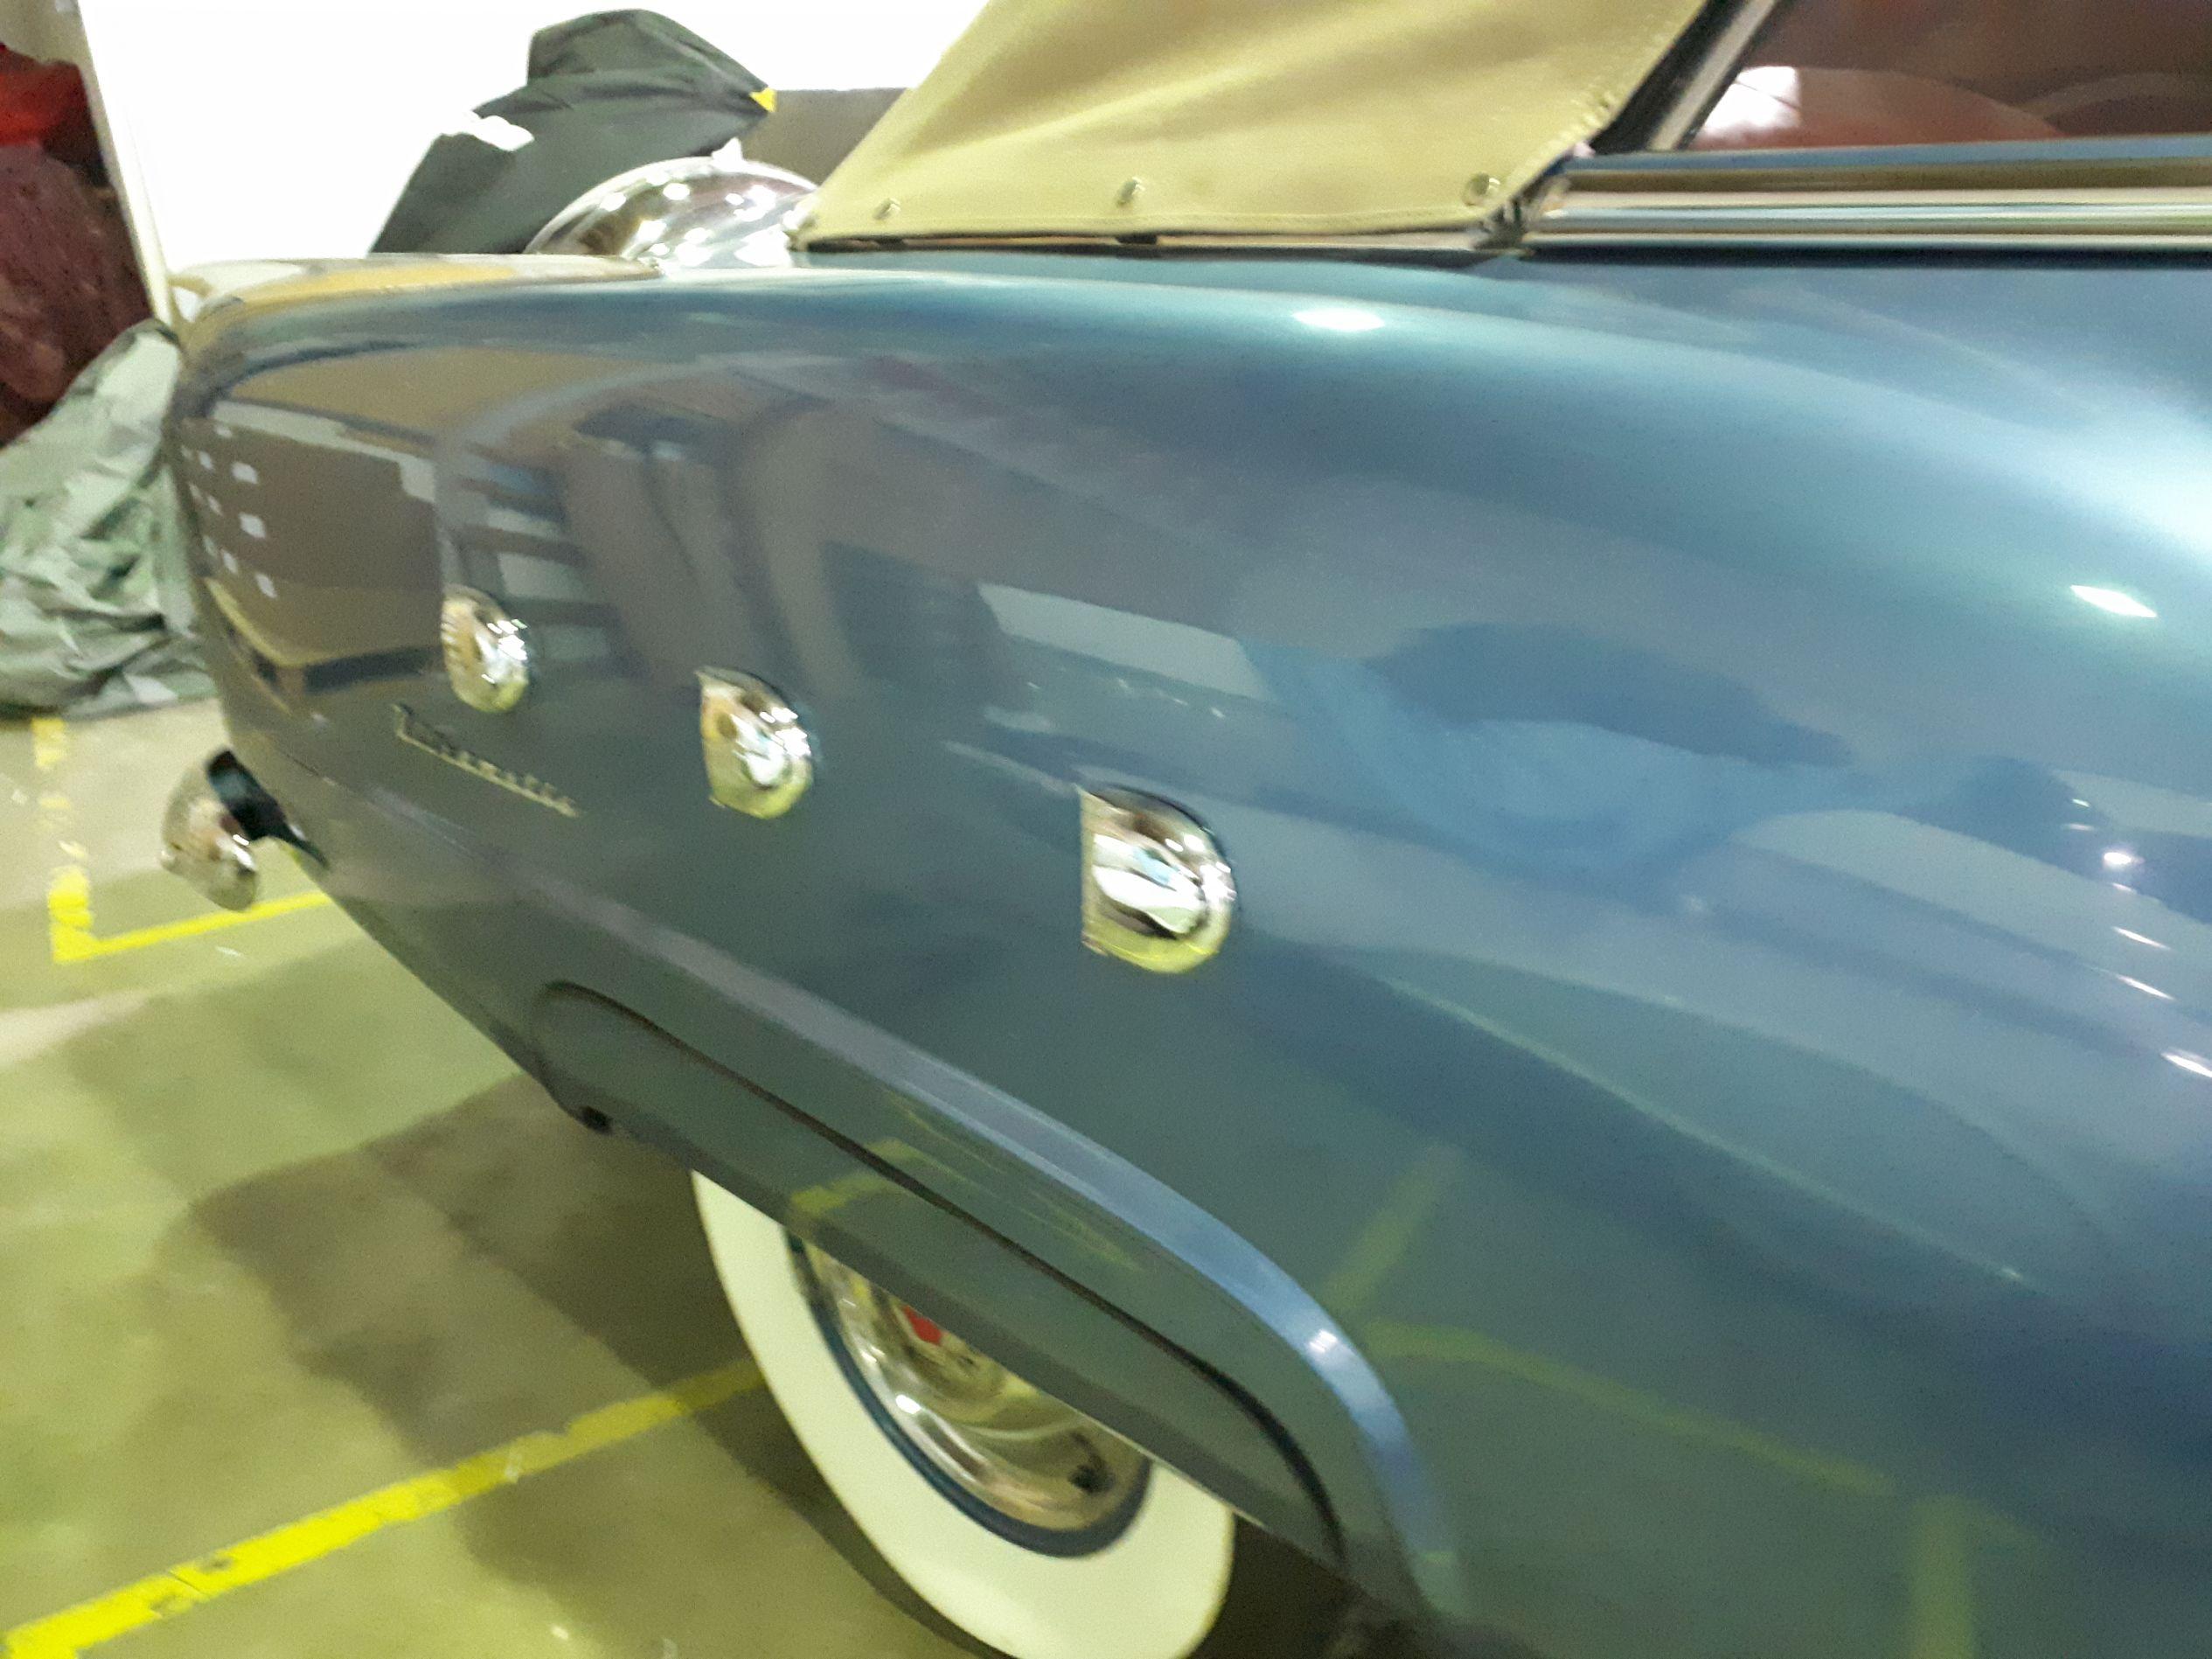 1951 Packard Ultramatic Convertible